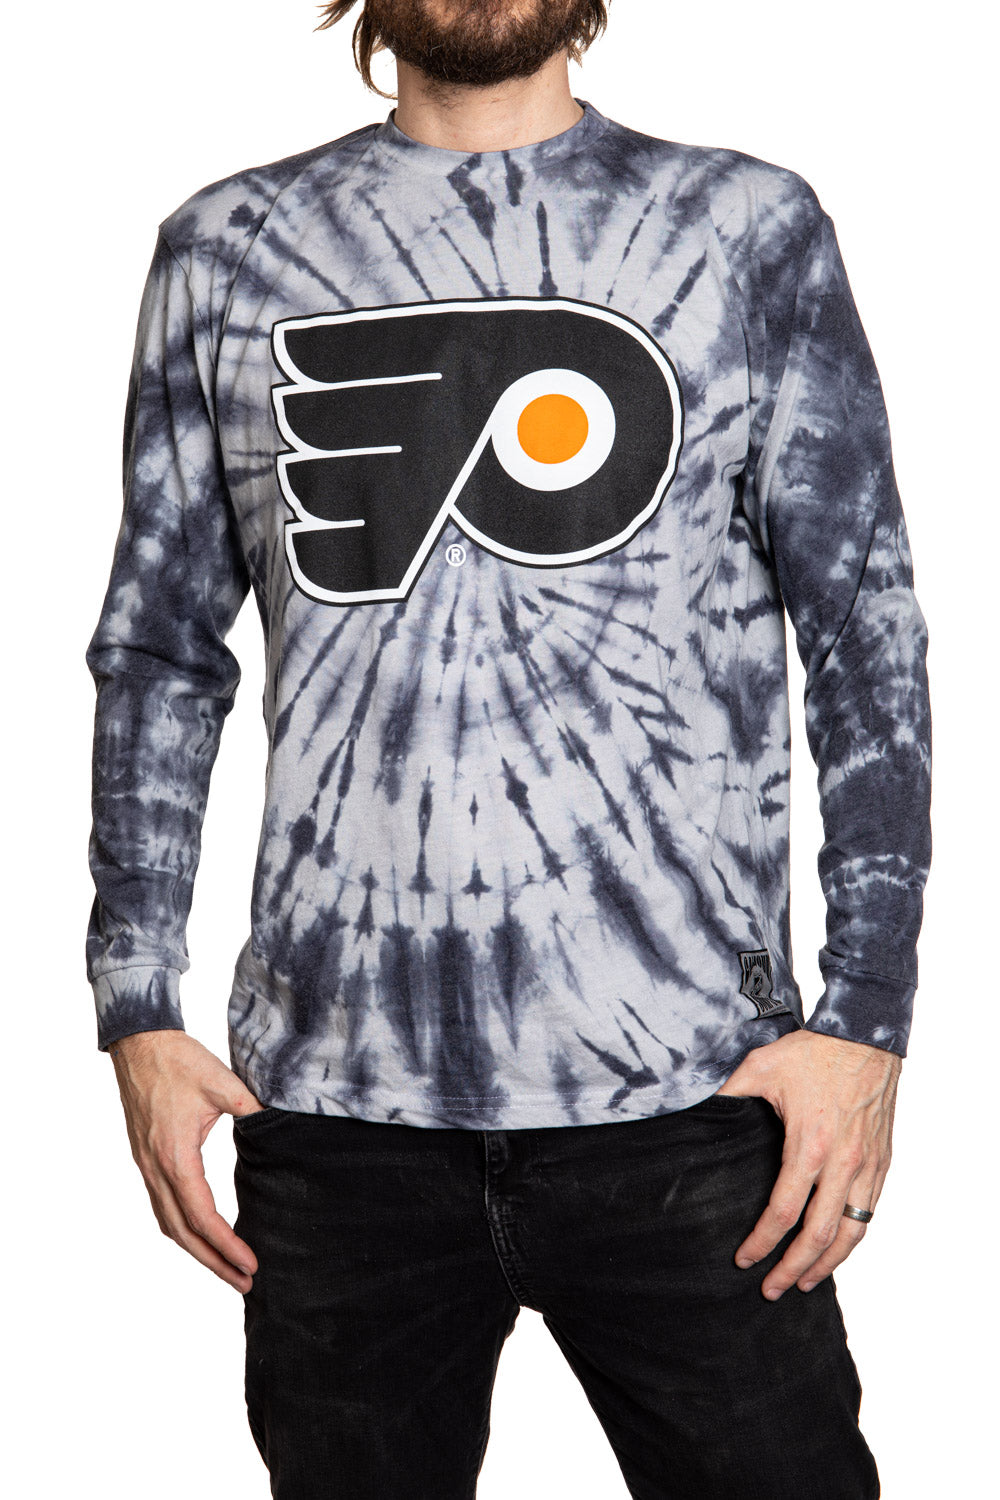 Philadelphia Flyers Spiral Tie Dye Longsleeve Shirt